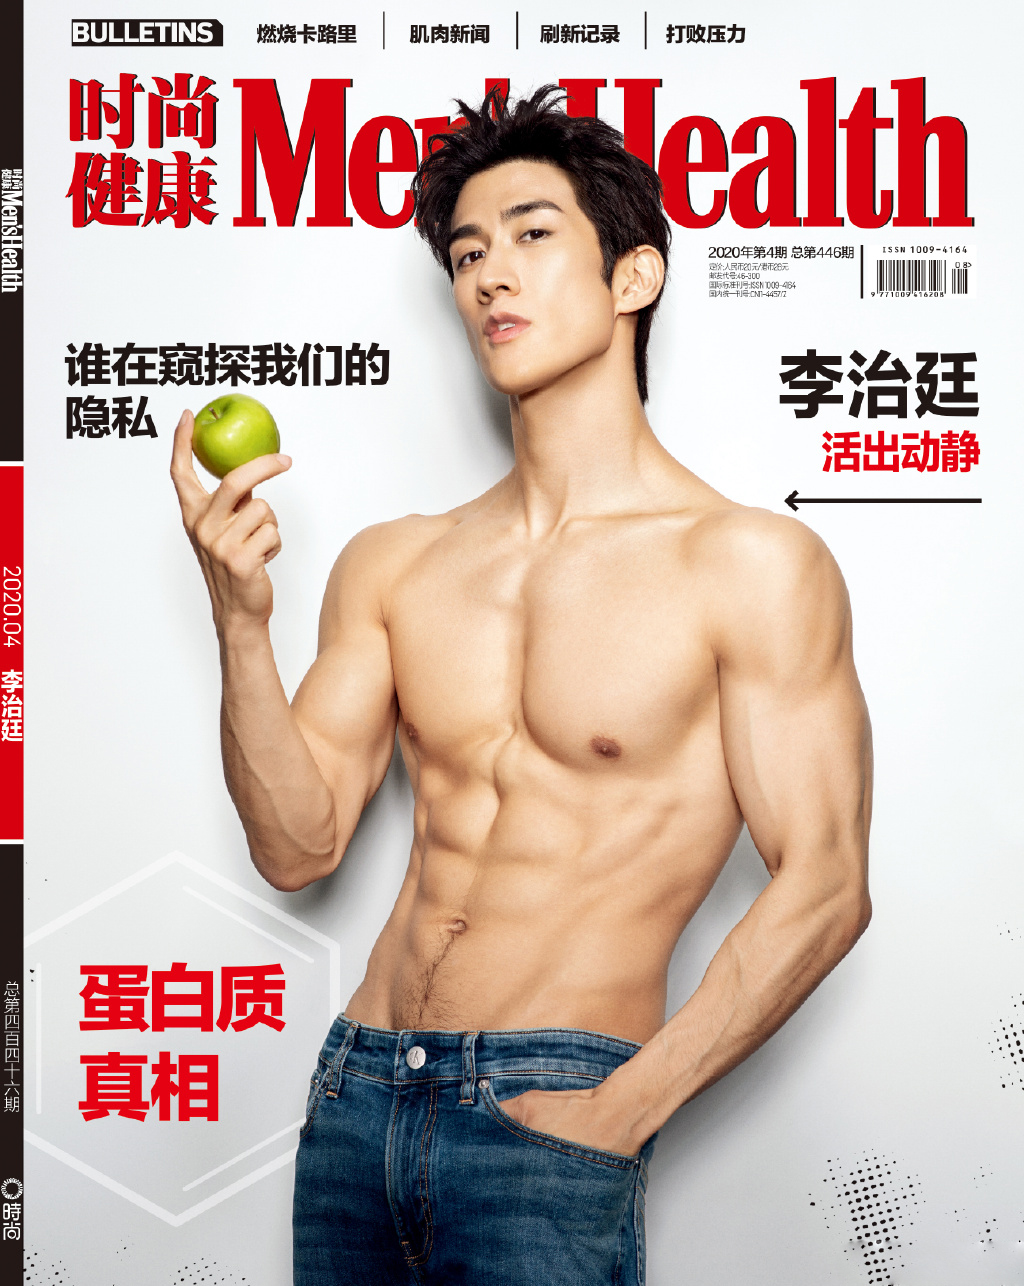 香港帅哥李治廷超然肌肉写真大片登《时尚健康》杂志封面图片